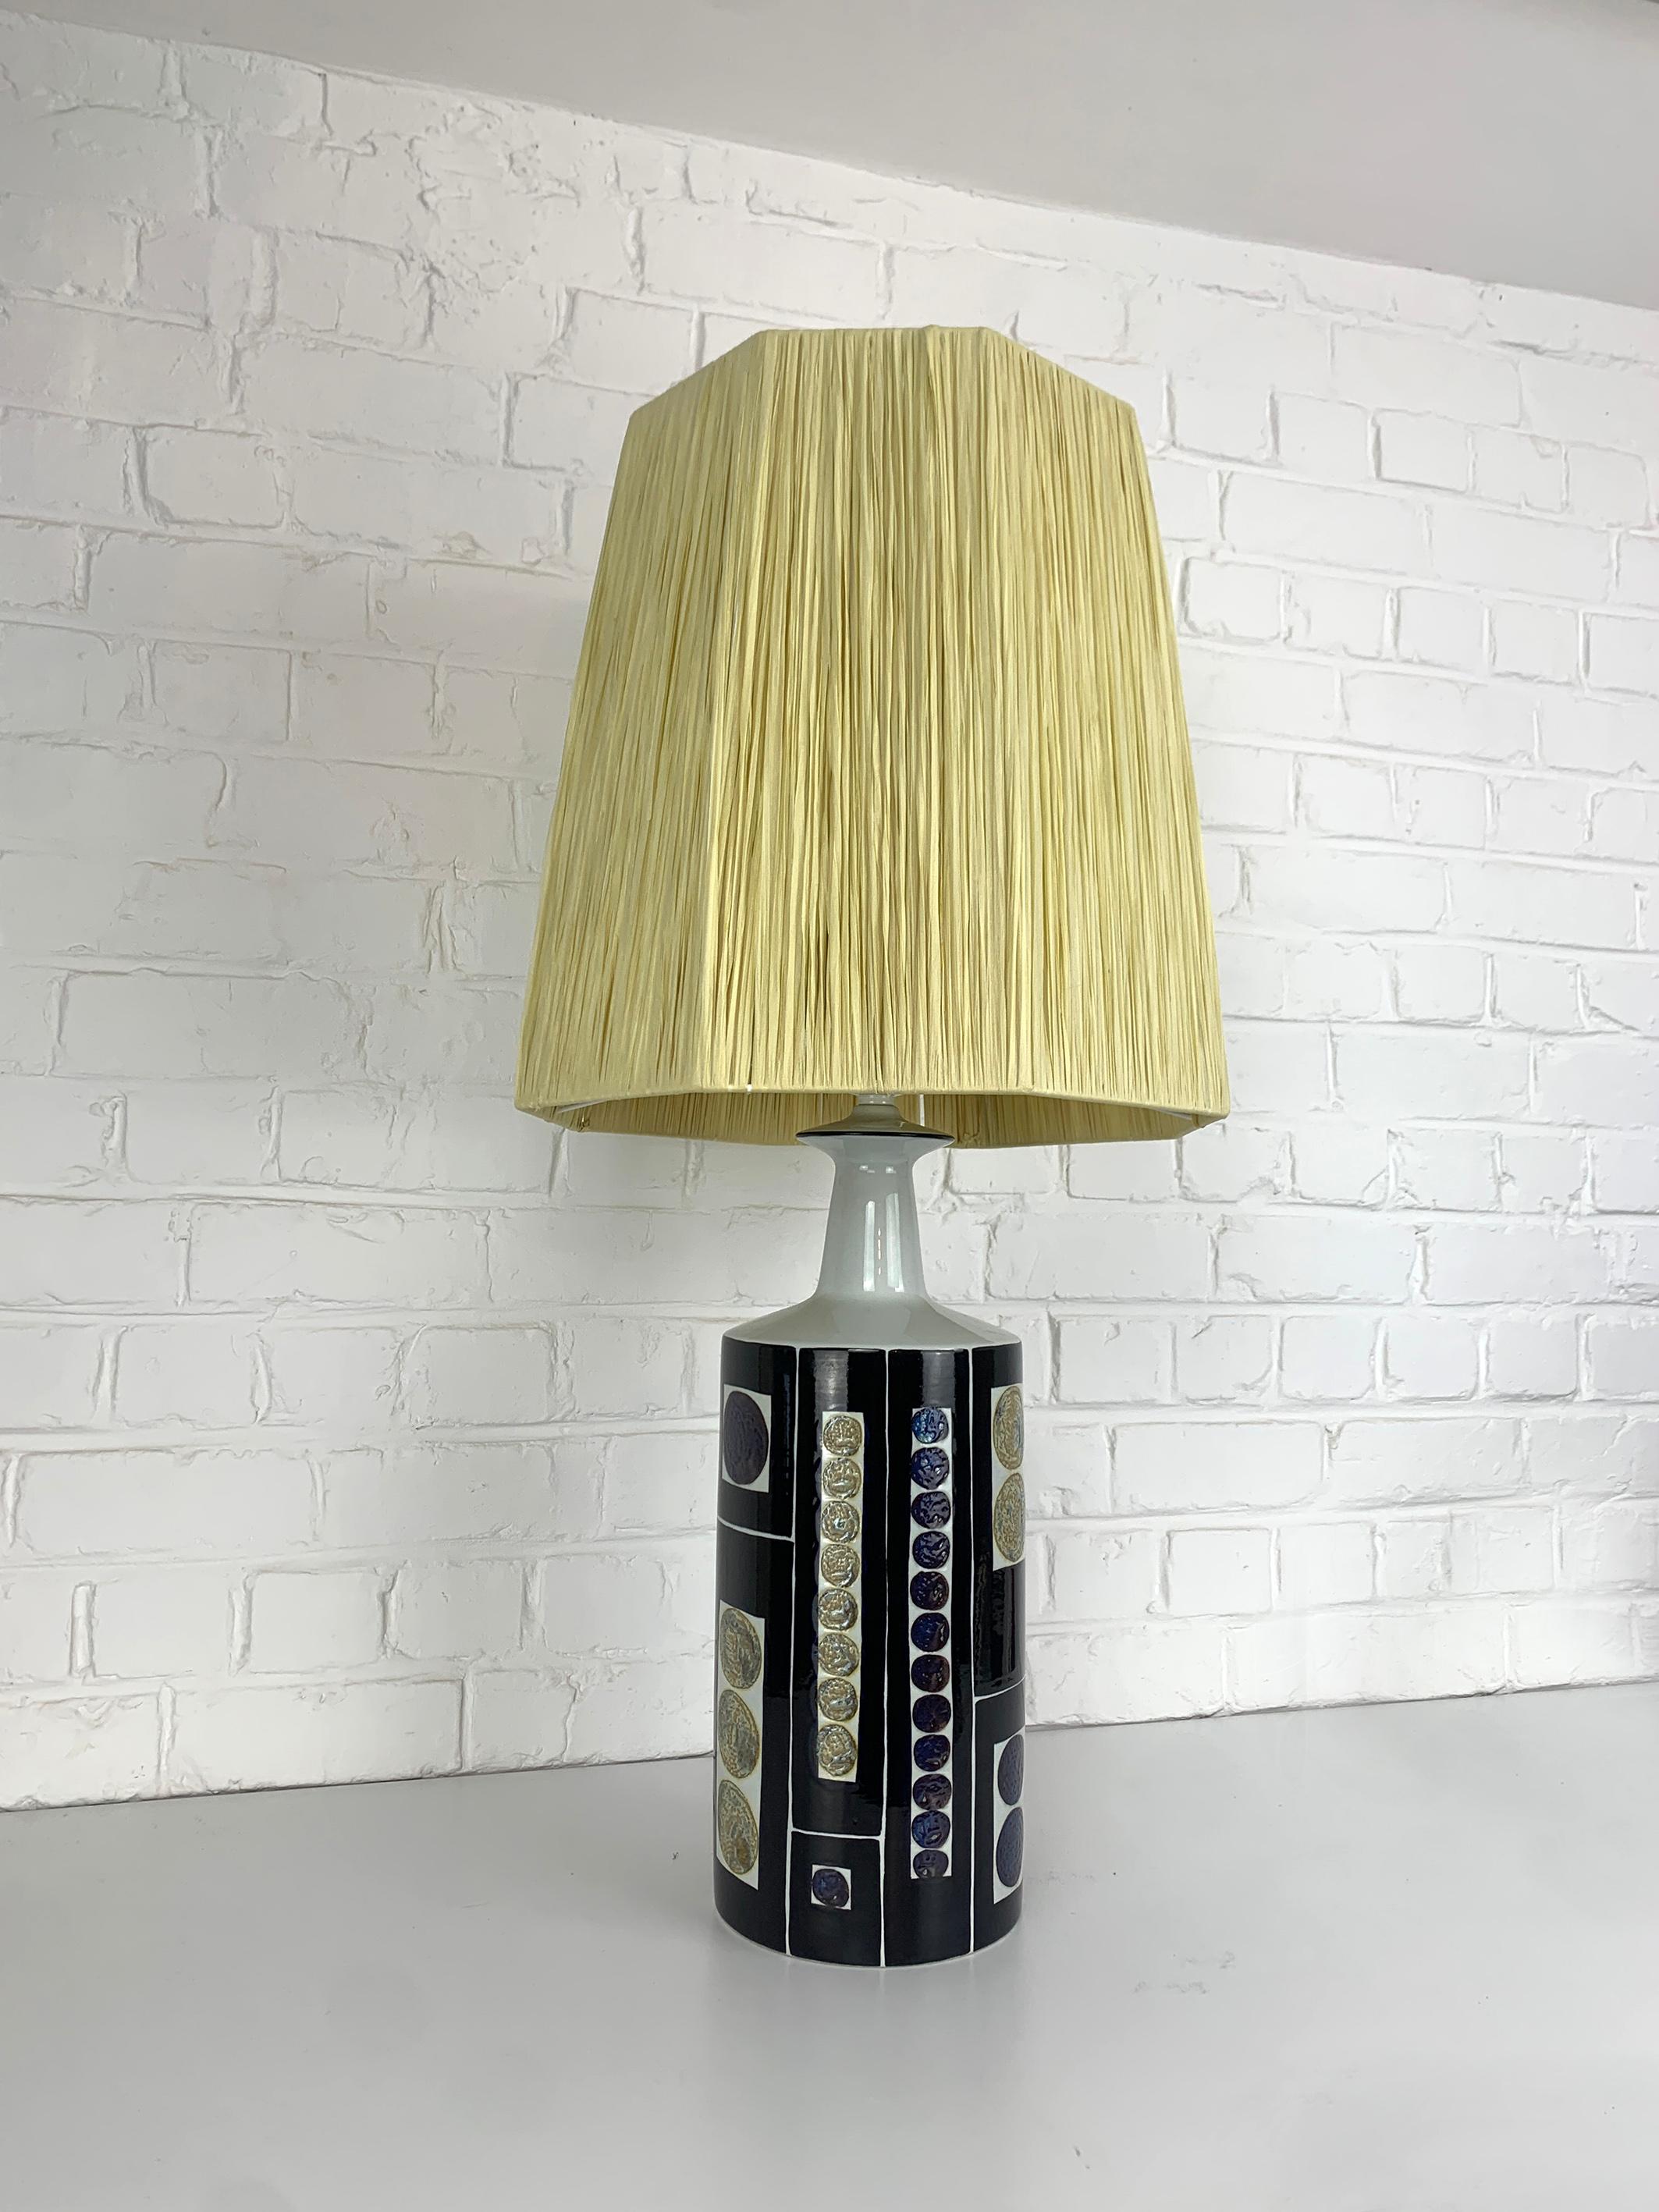 Grande lampe de table de la fin des années 1960 ou du début des années 1970. Cette lampe a été fabriquée par Royal Copenhagen et vendue par Fog & Mørup, Danemark. 

Impressionnante conception graphique audacieuse d'Inge-Lise Koefoed, présentant un